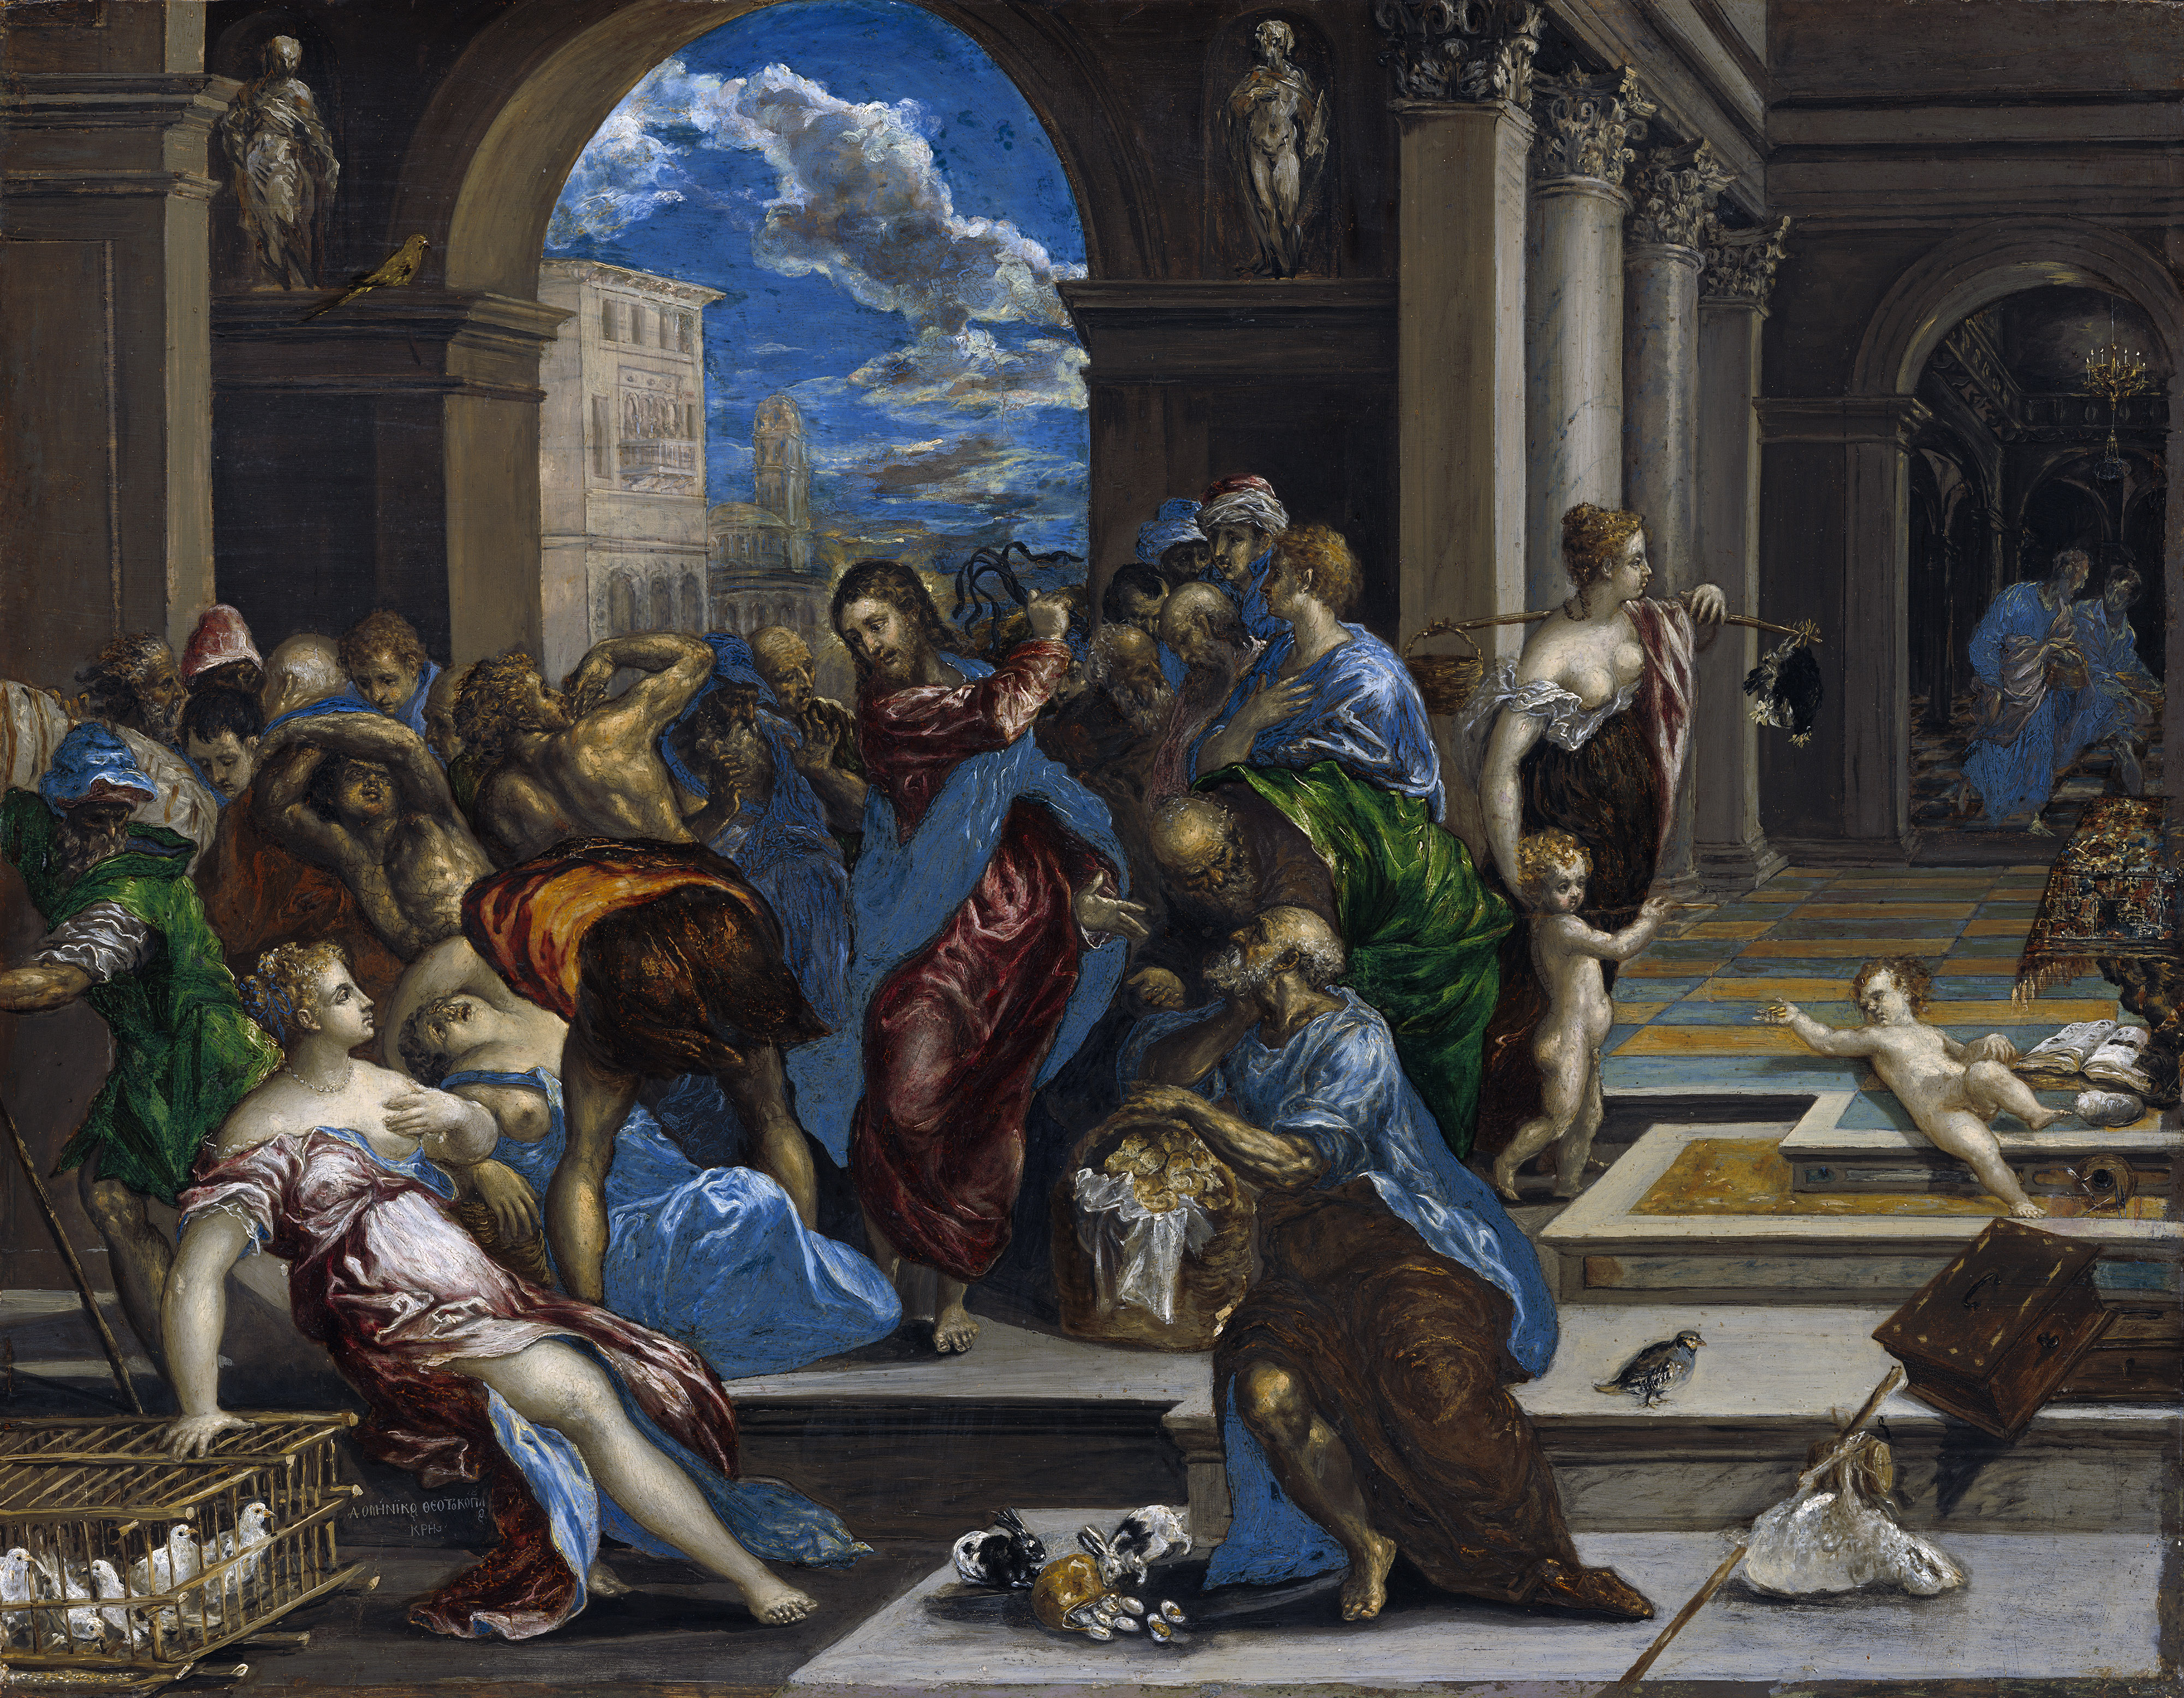 Jézus kikergeti a fintech vállalkozókat a templomból - El Greco festménye (Forrás: Wikimedia Commons)